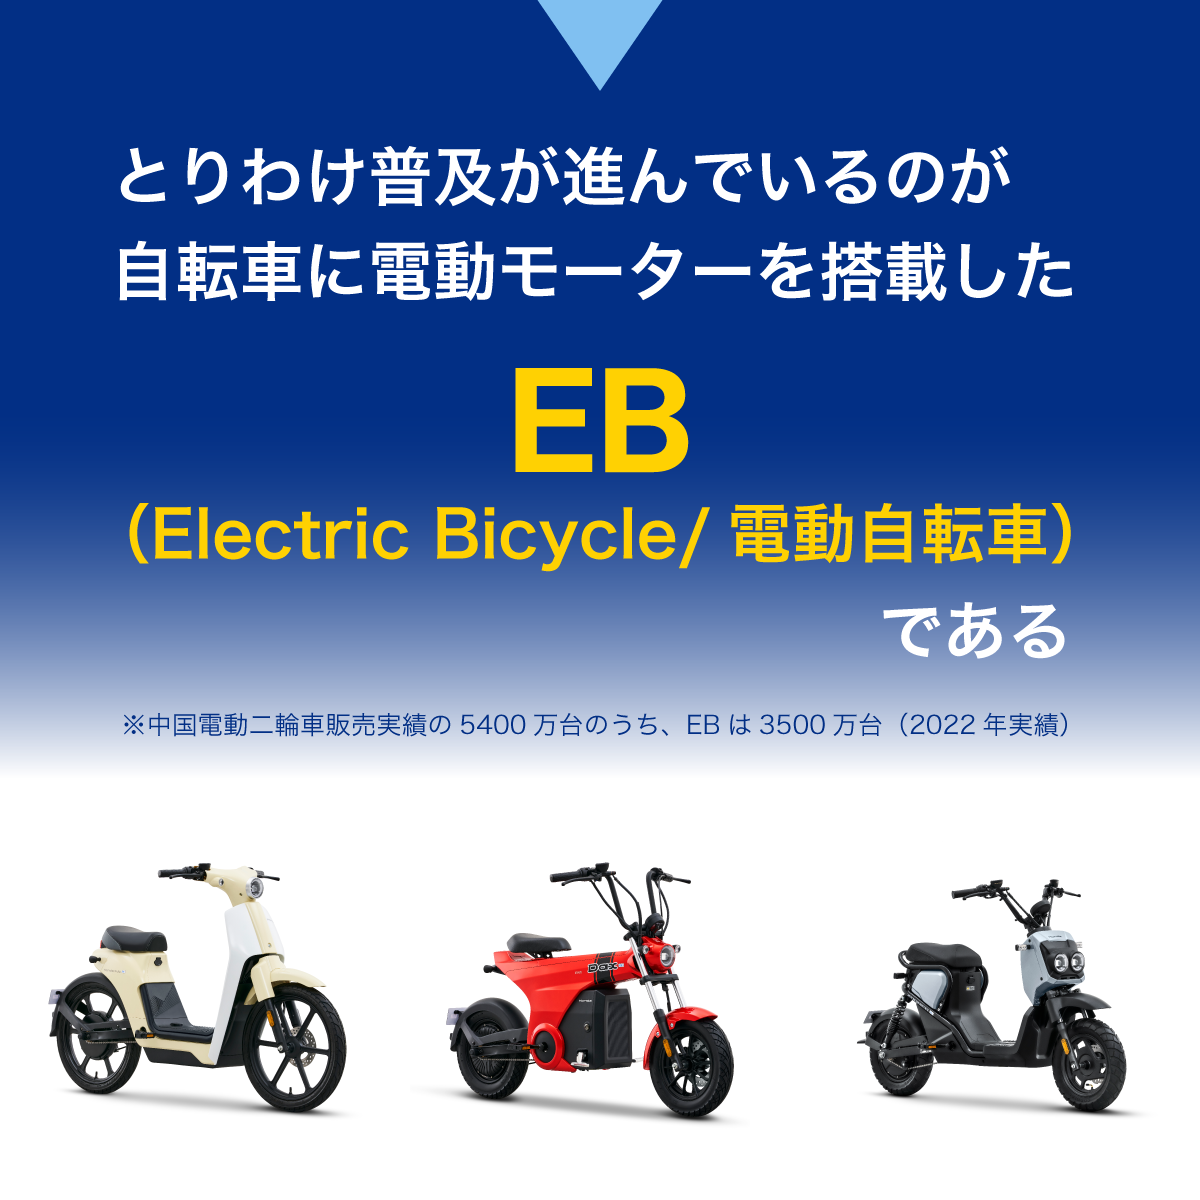 とりわけ普及が進んでいるのが自転車に電動モーターを搭載したEB（Electric Bicycle/電動自転車）である